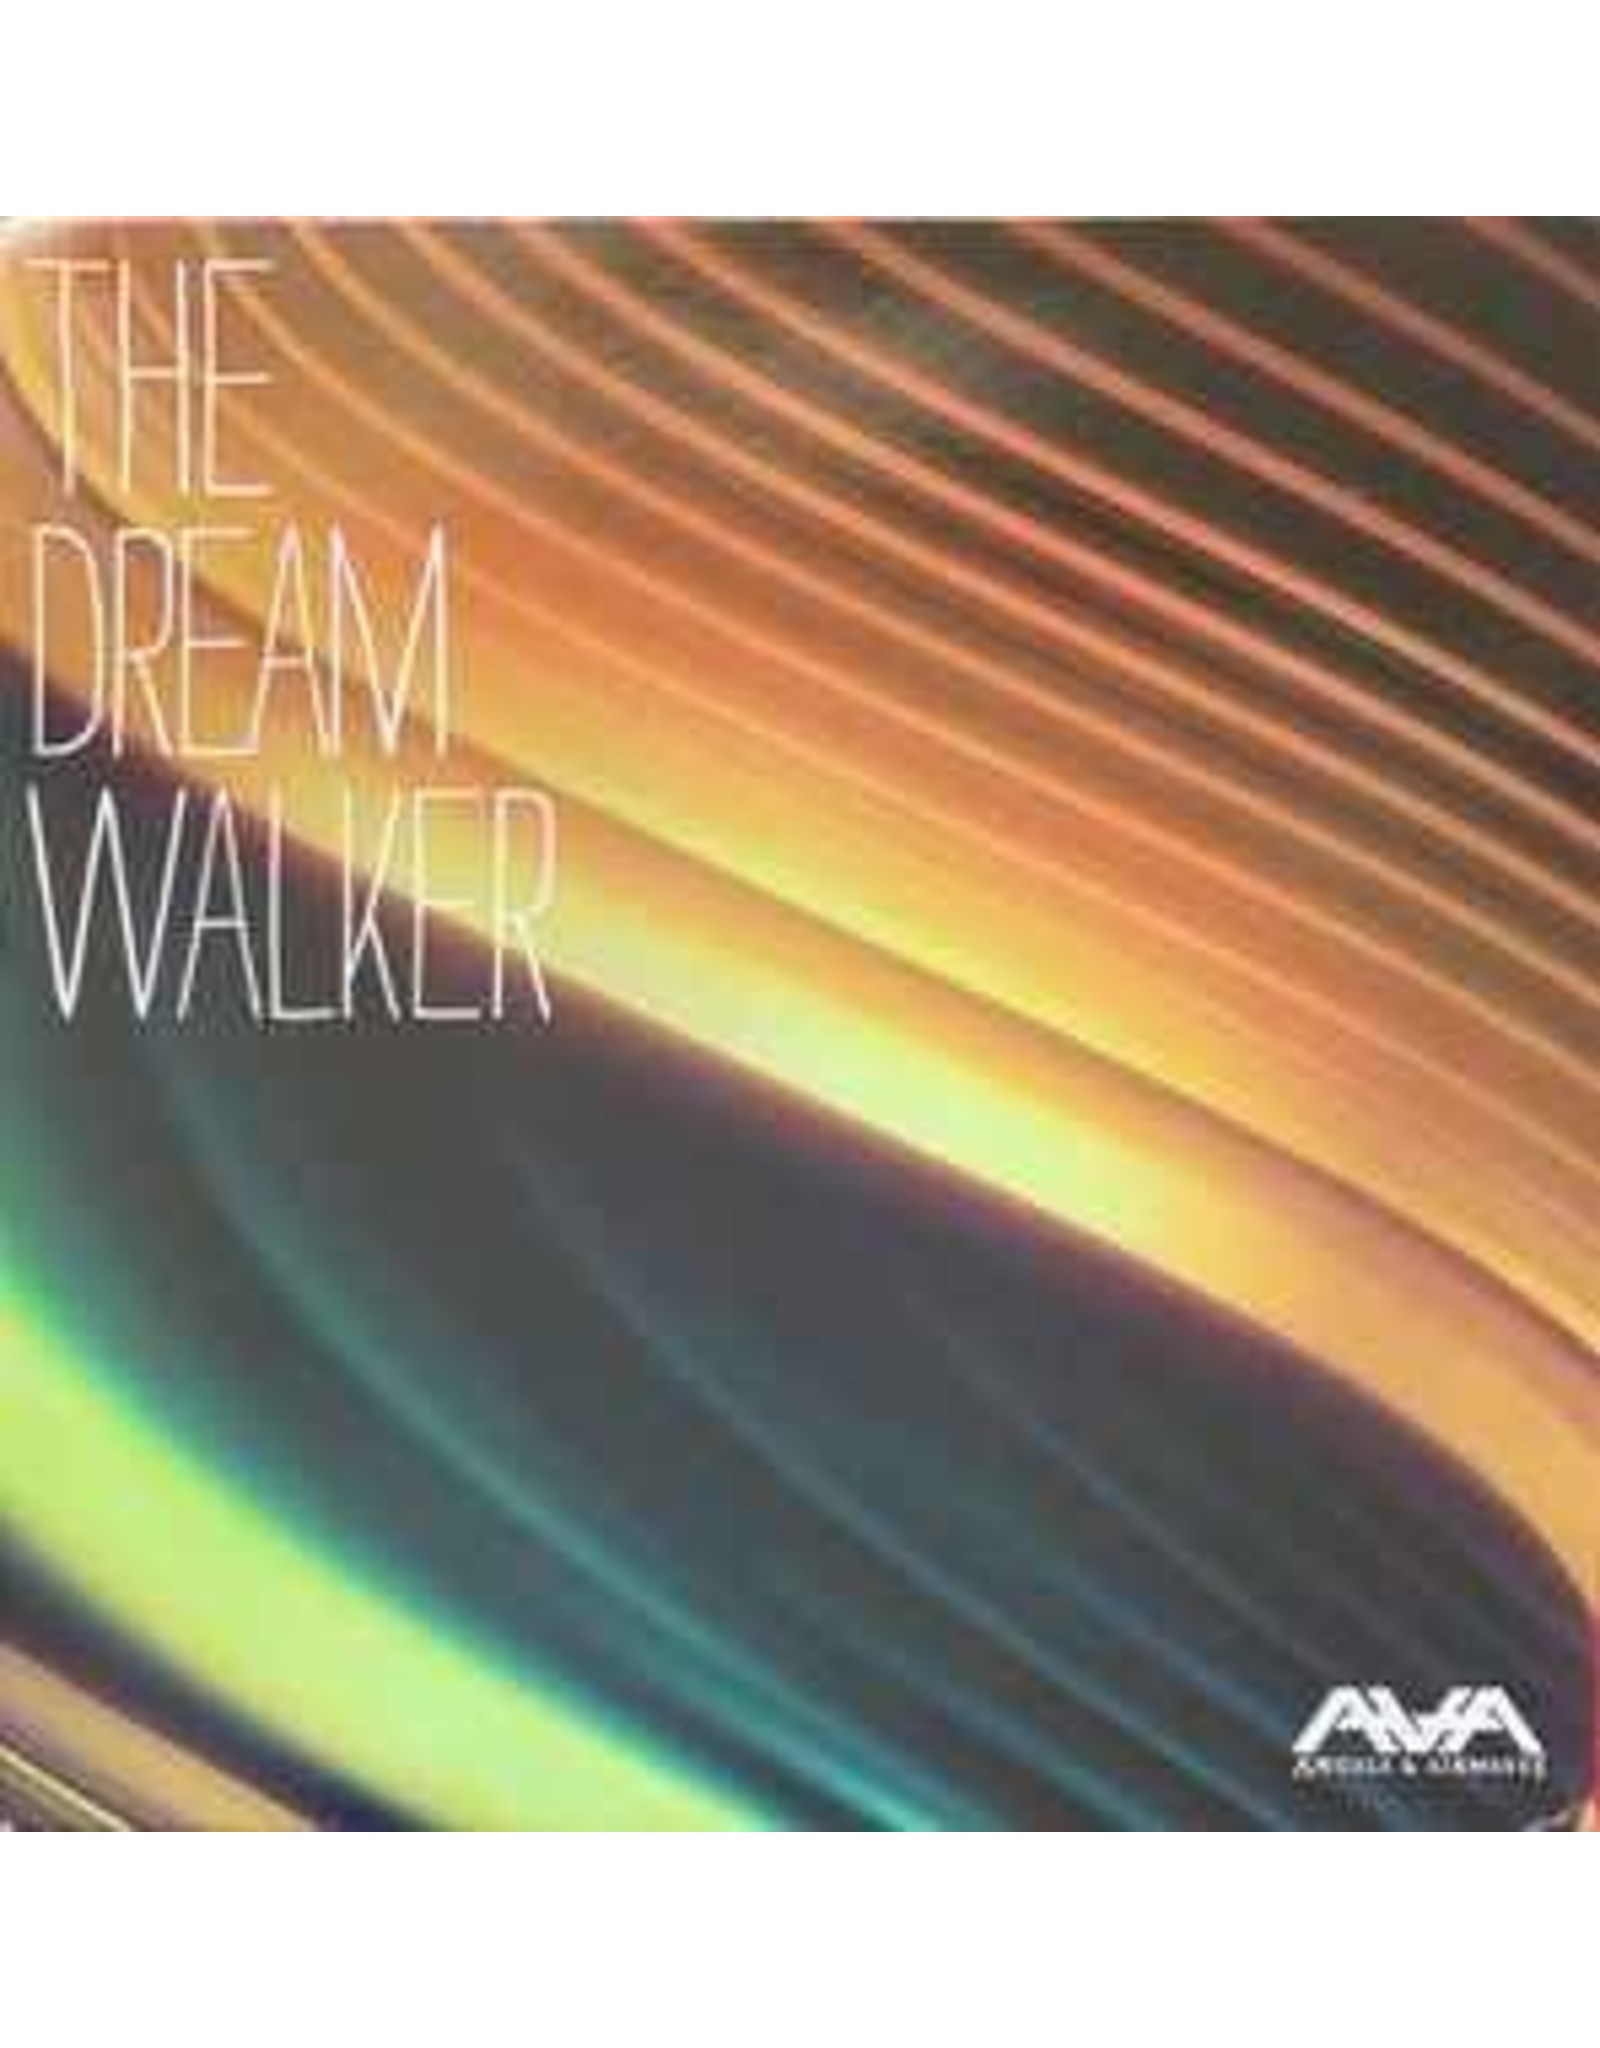 Angels & Airwaves - The Dream Walker (Indie Exclusive Spring Green Vinyl) LP